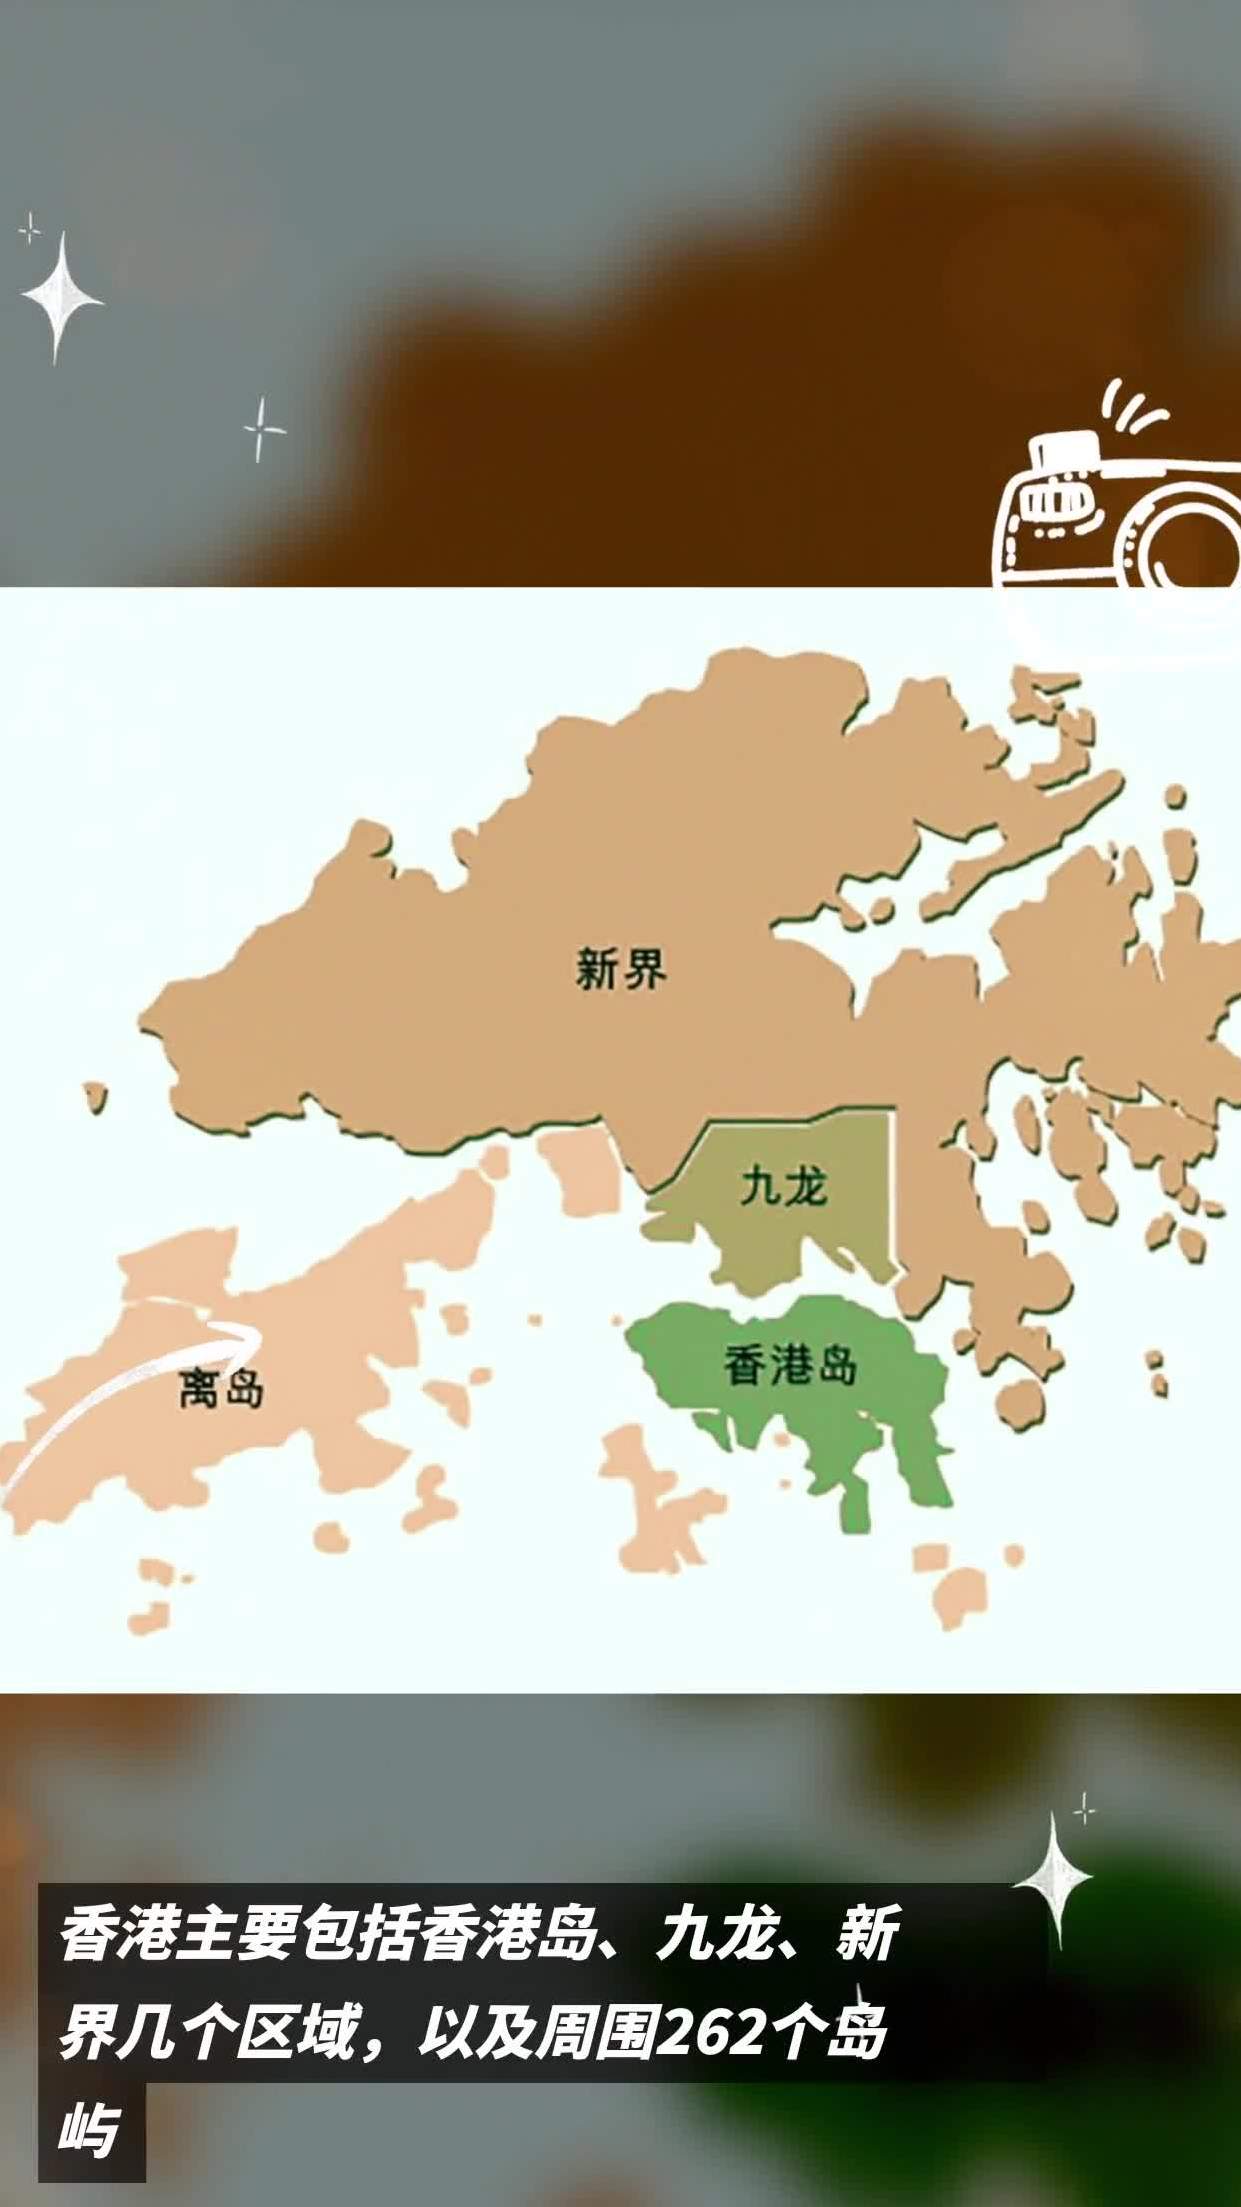 香港主要包括香港岛,九龙,新界几个区域,以及周围262个岛屿